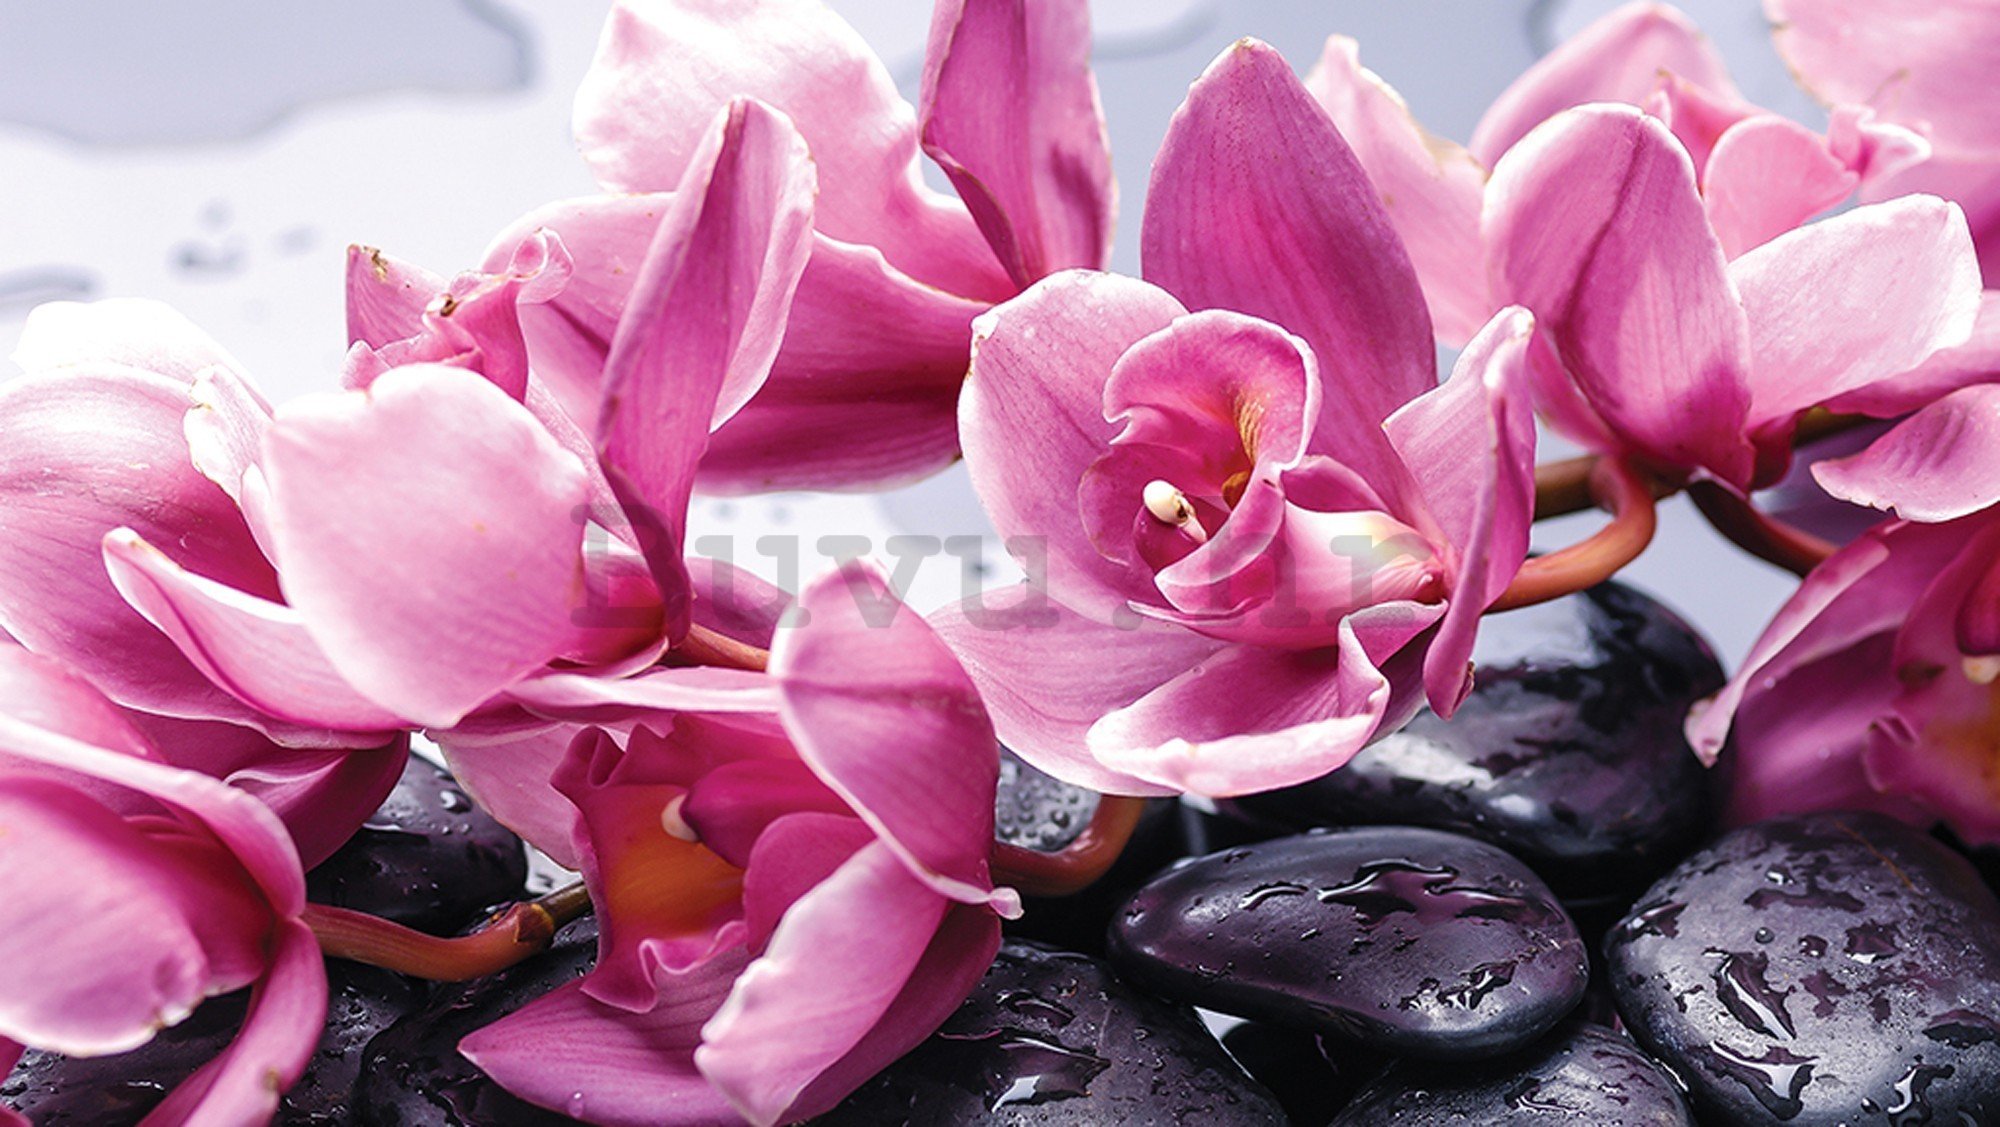 Vlies foto tapeta: Spa kamenje i ružičaste orhideje - 416x254 cm